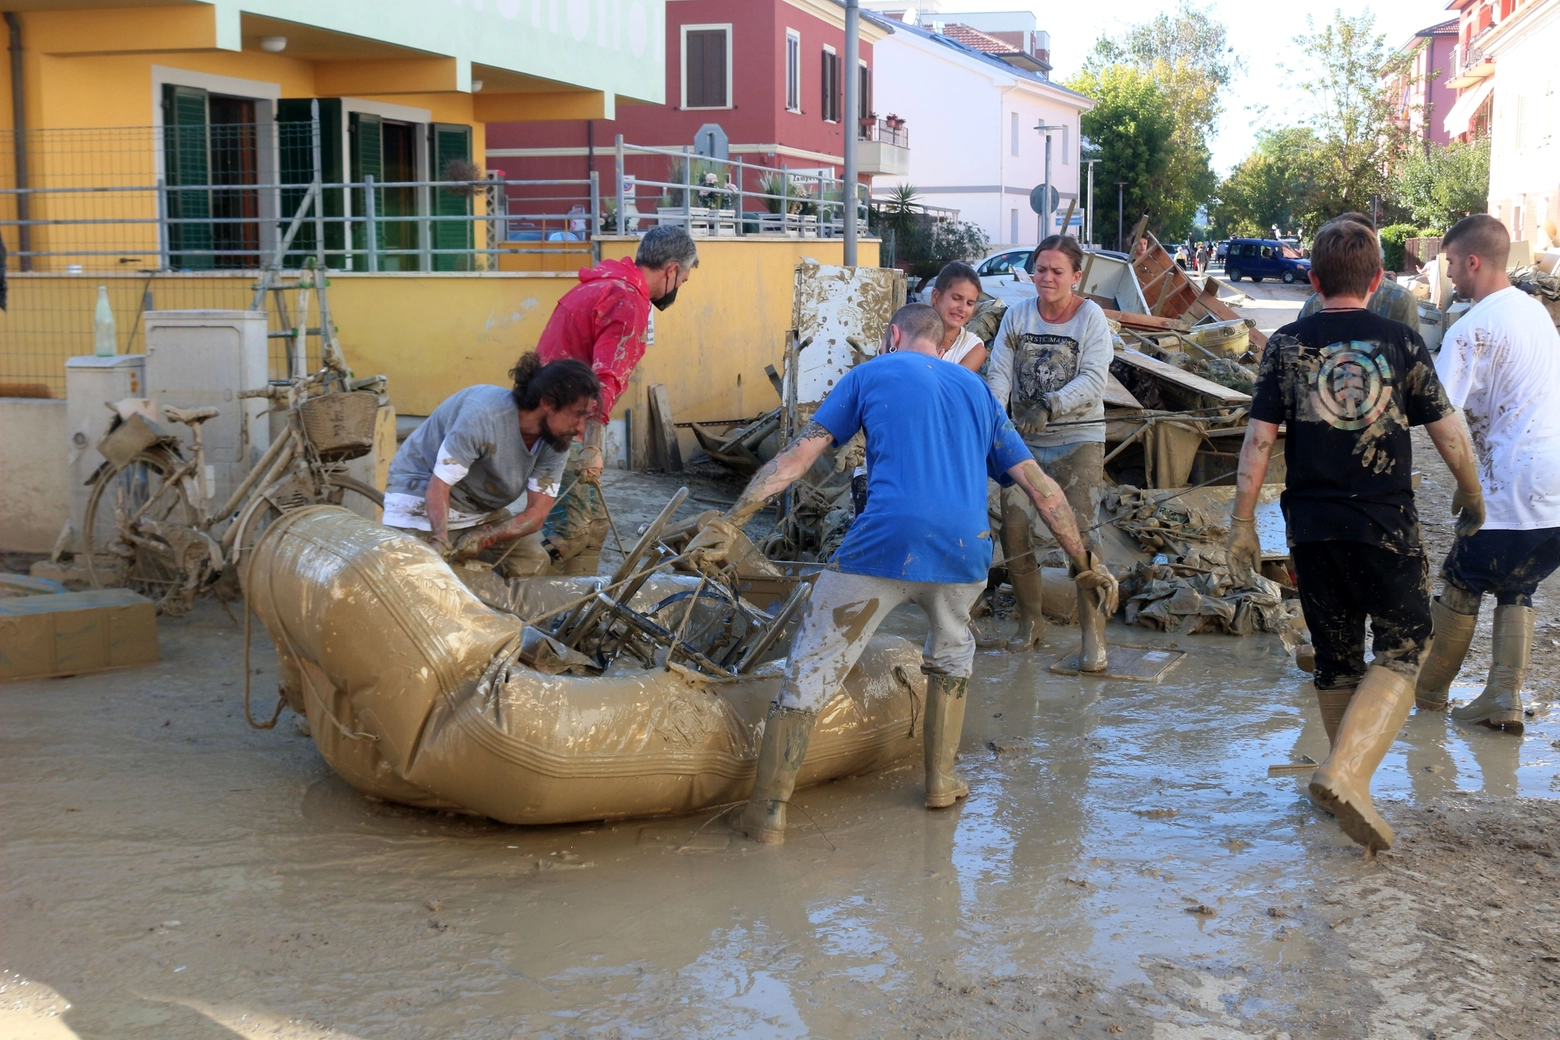 Le tragiche immagini dell'alluvione che ha colpito Emilia Romagna e Marche: via alla proroga delle domande di interventi di ricostruzione